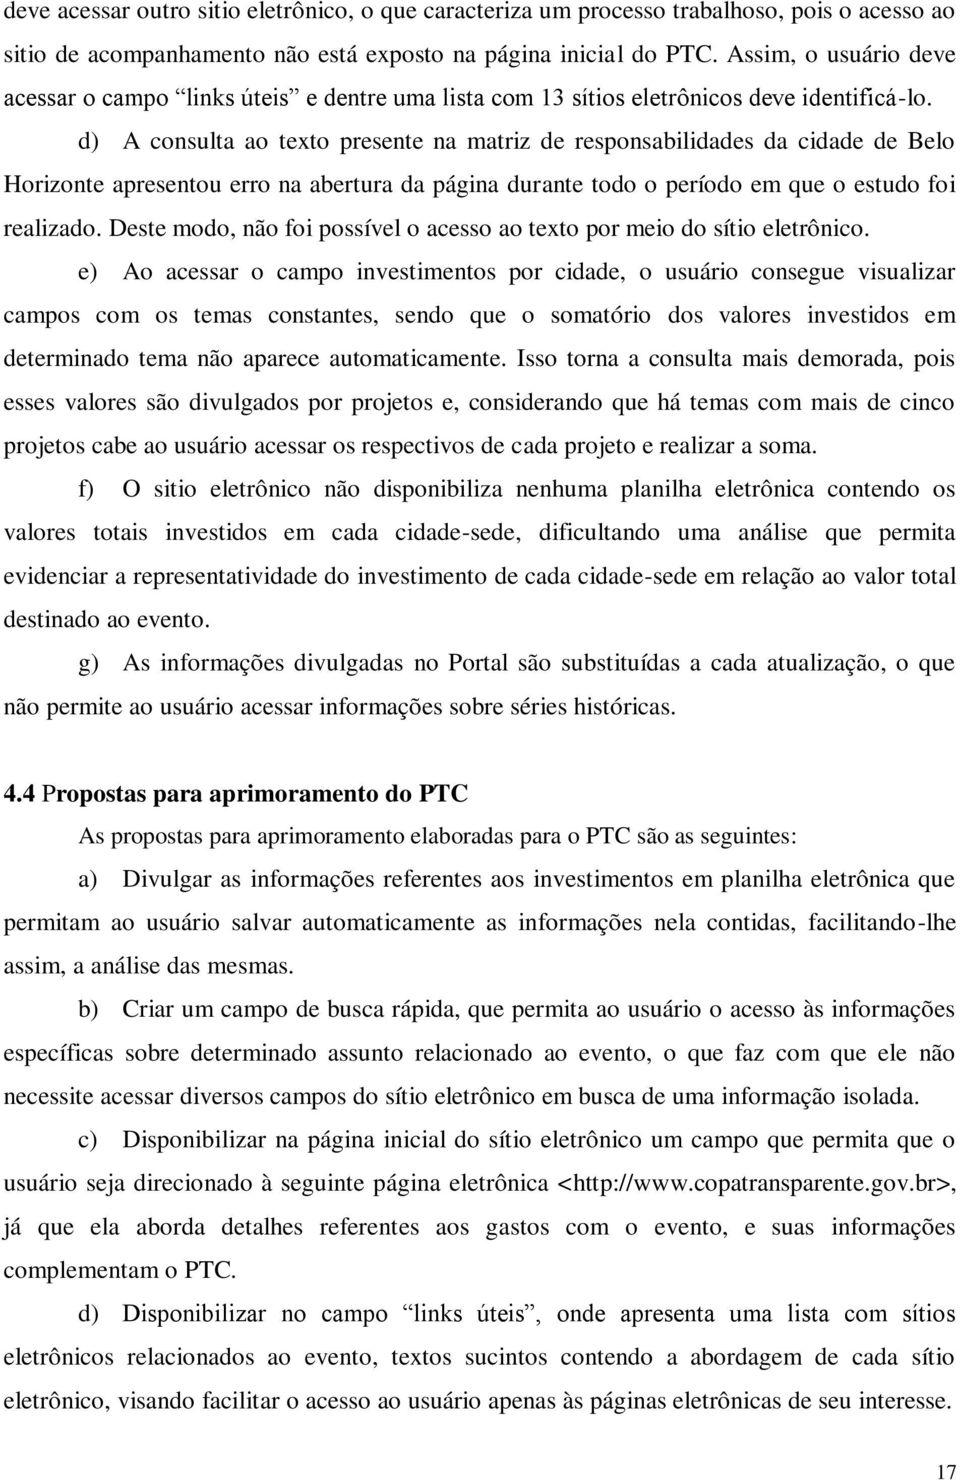 d) A consulta ao texto presente na matriz de responsabilidades da cidade de Belo Horizonte apresentou erro na abertura da página durante todo o período em que o estudo foi realizado.